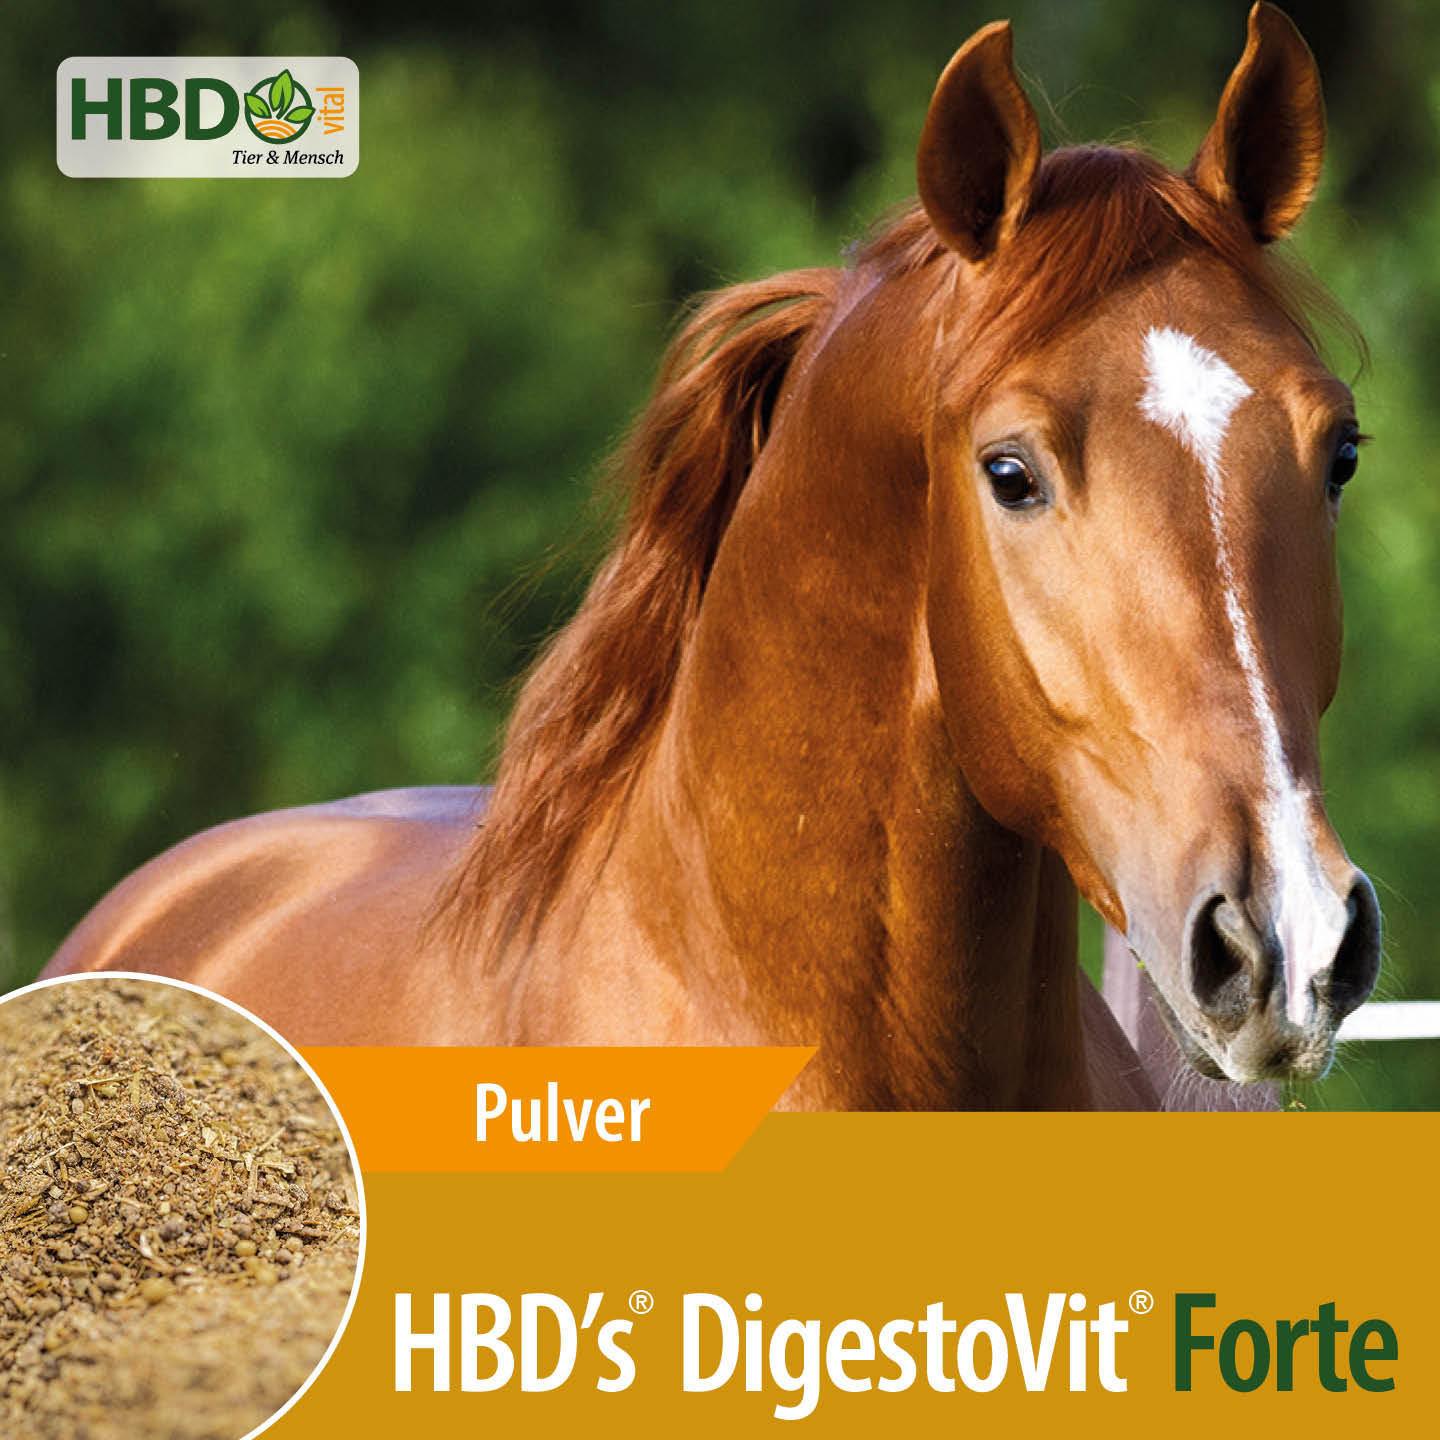 Shopbild für HBD's DigestoVit Forte für Pferde - Das Bild zeigt den Produktnamen sowie den Hinweis, dass es sich um ein Pulver handelt. Ein braunes Pferd ist zu sehen, was das Produkt visuell ansprechend präsentiert und seine Verwen